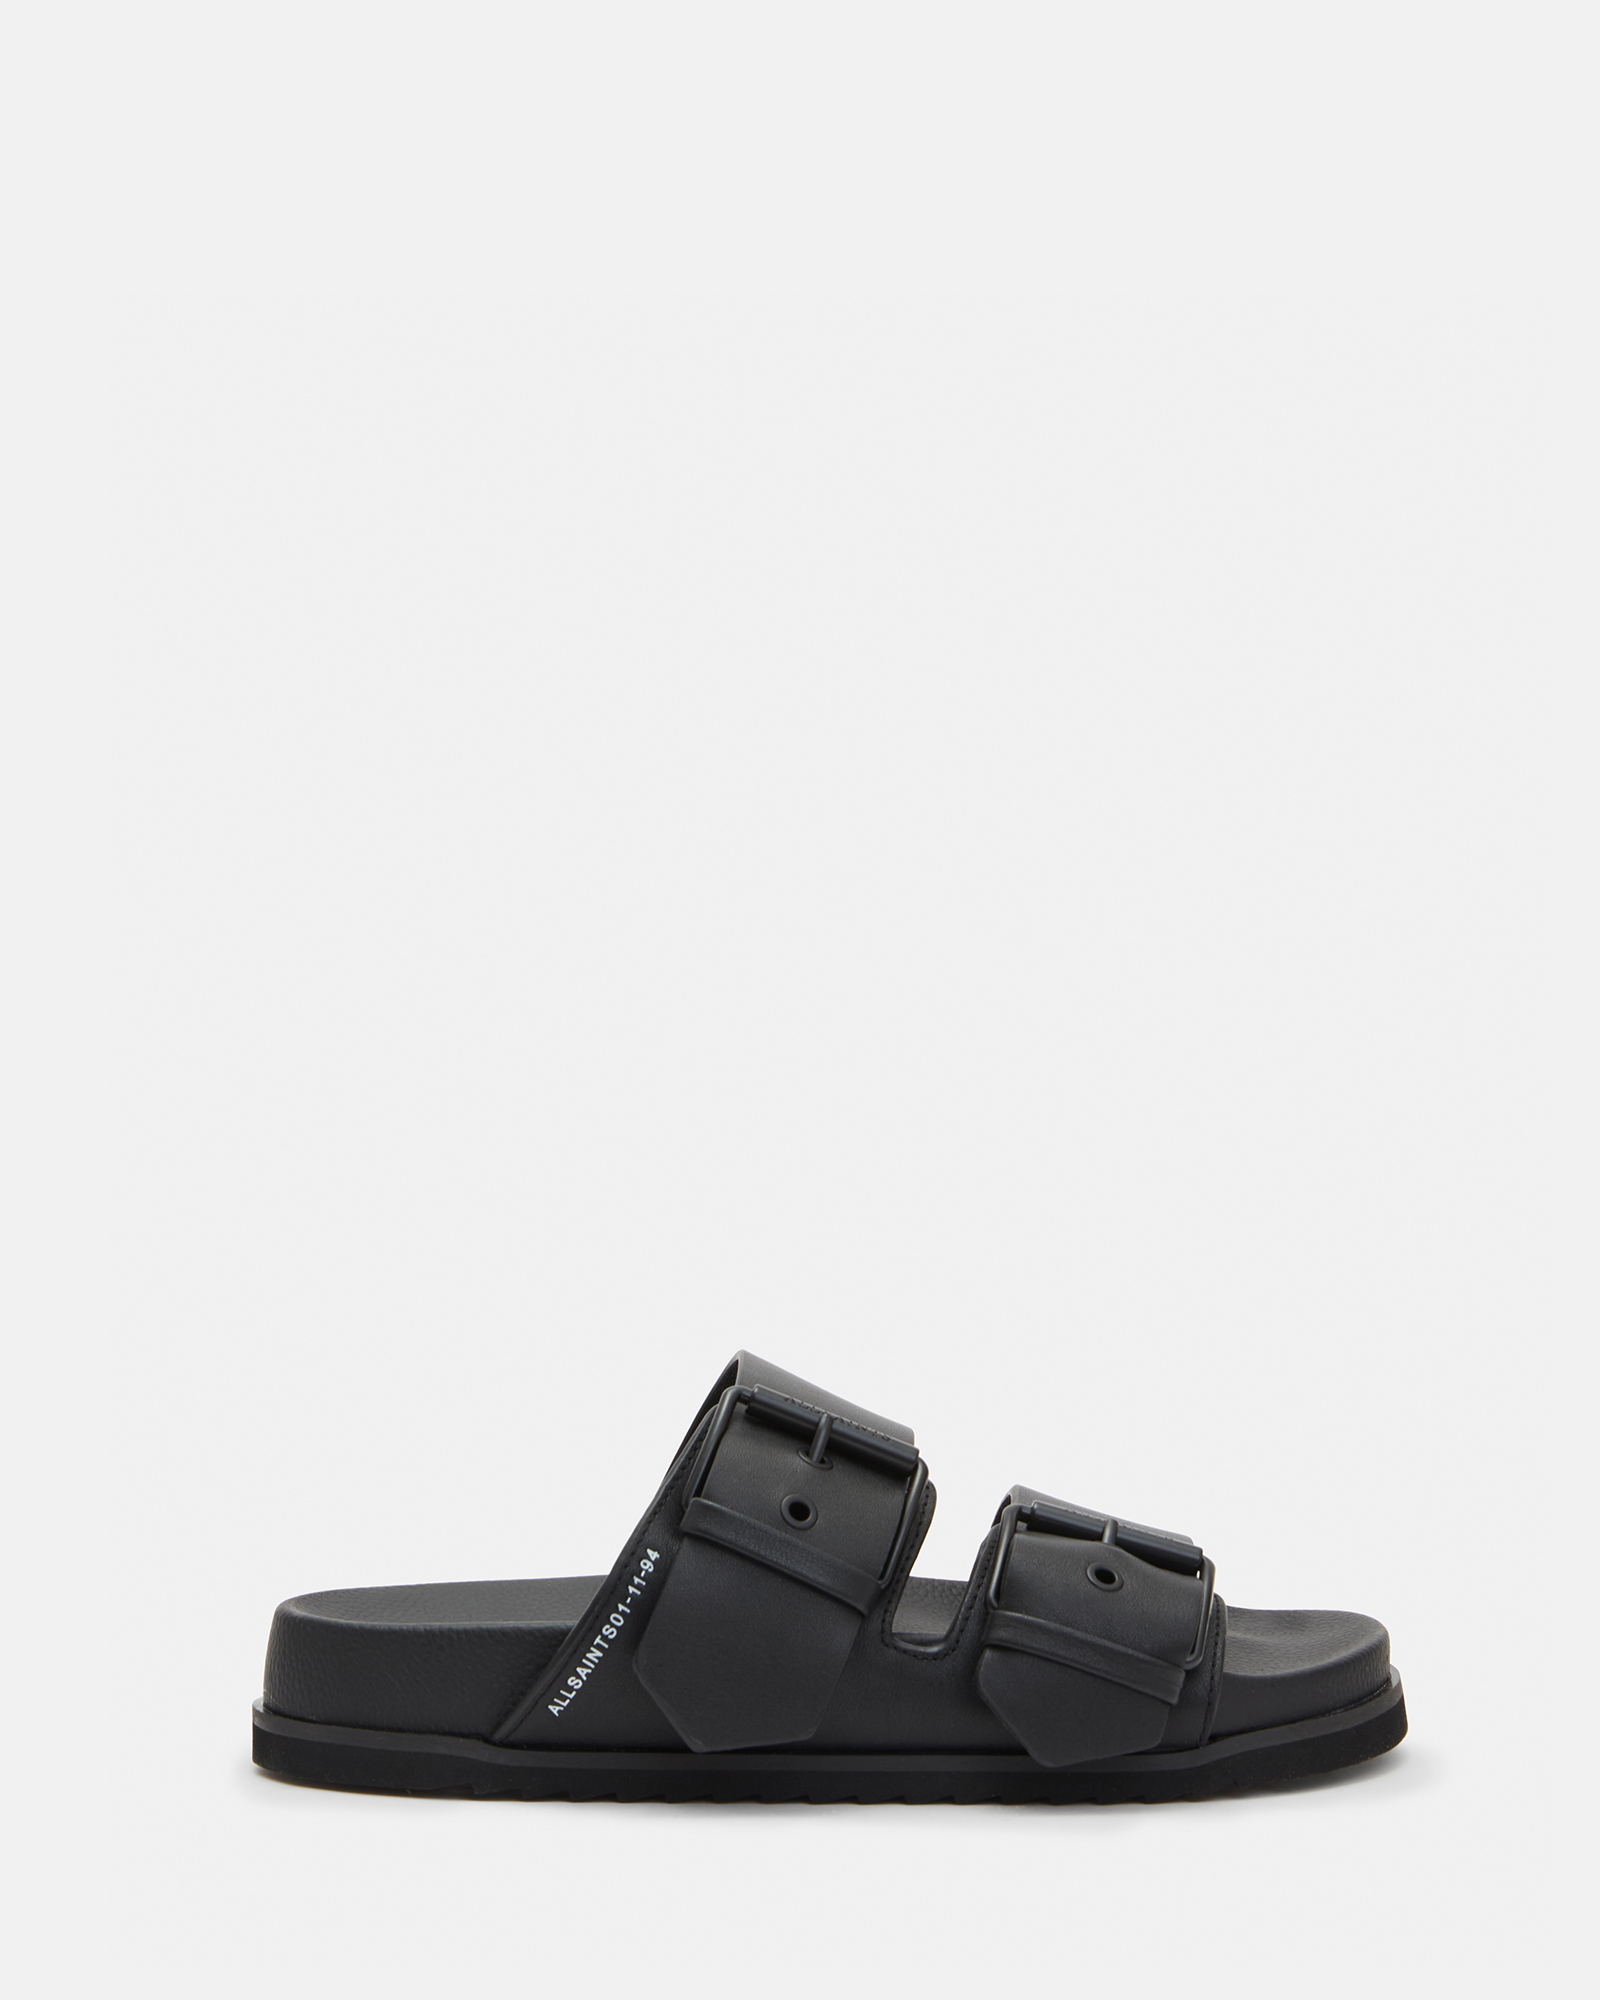 Sian Leather Sandals Black | ALLSAINTS